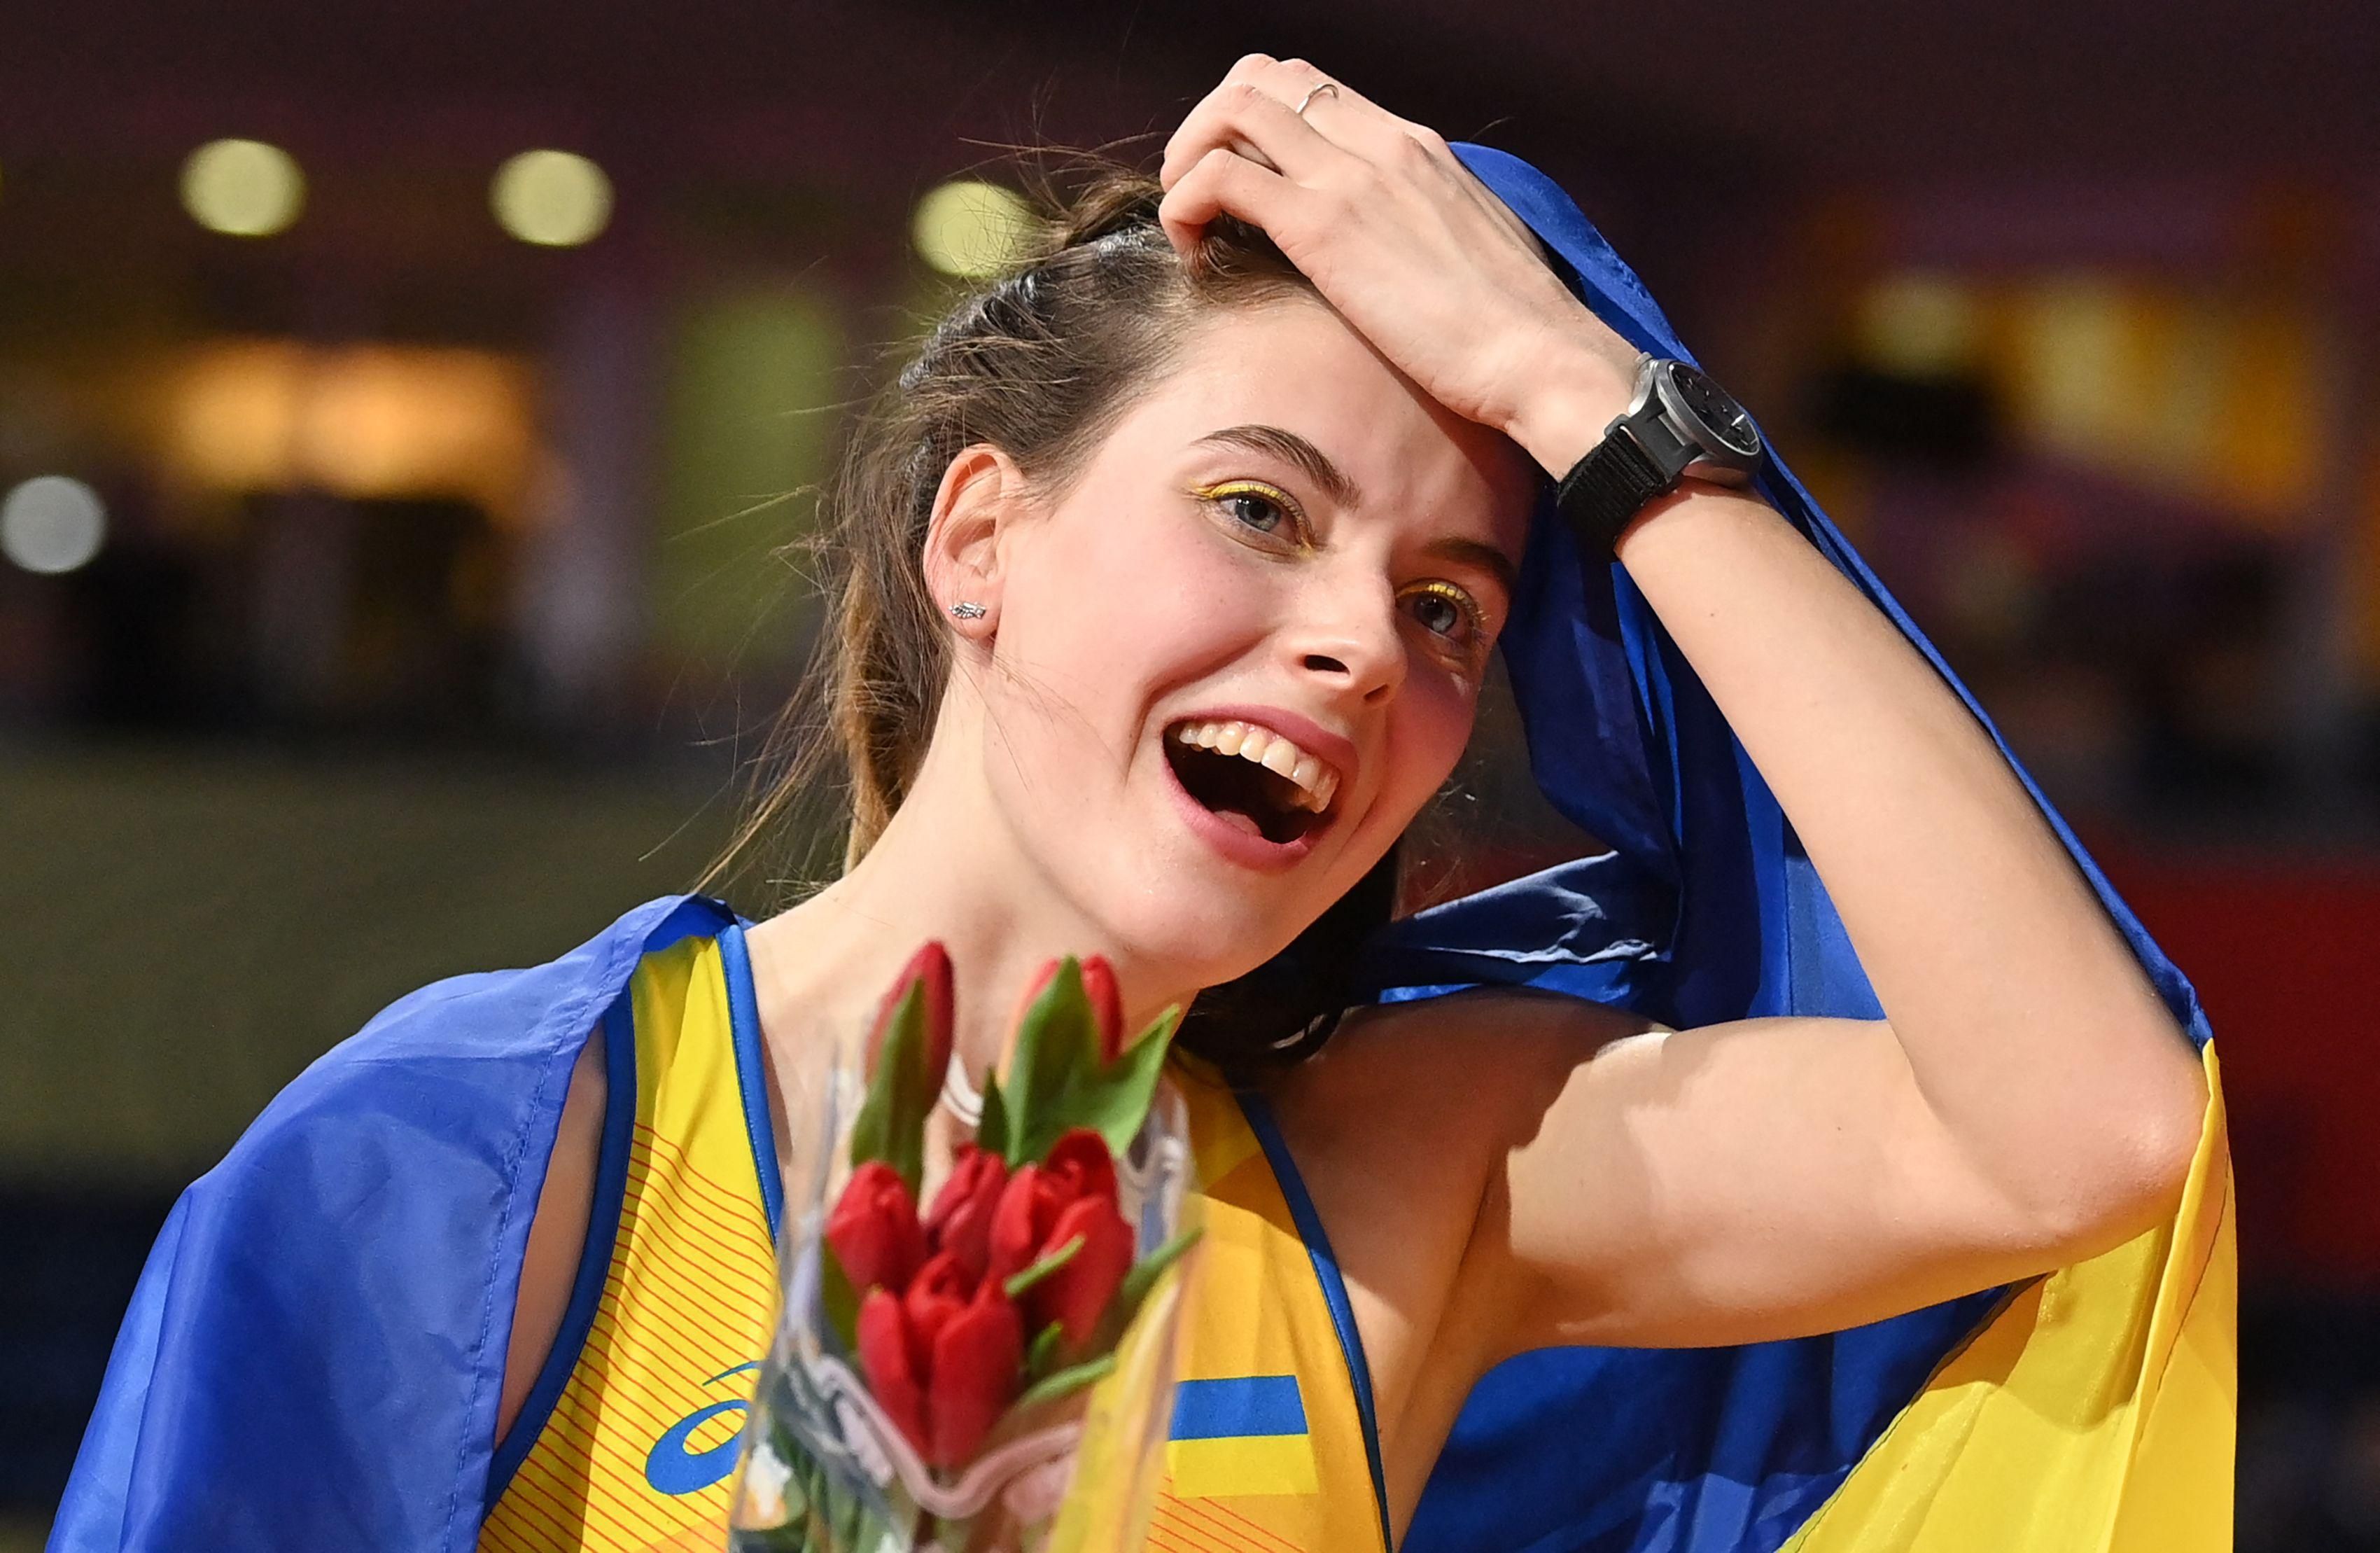 Феєрія українки продовжується  відео переможного стрибка Магучіх на Діамантовій лізі - 24 канал Спорт